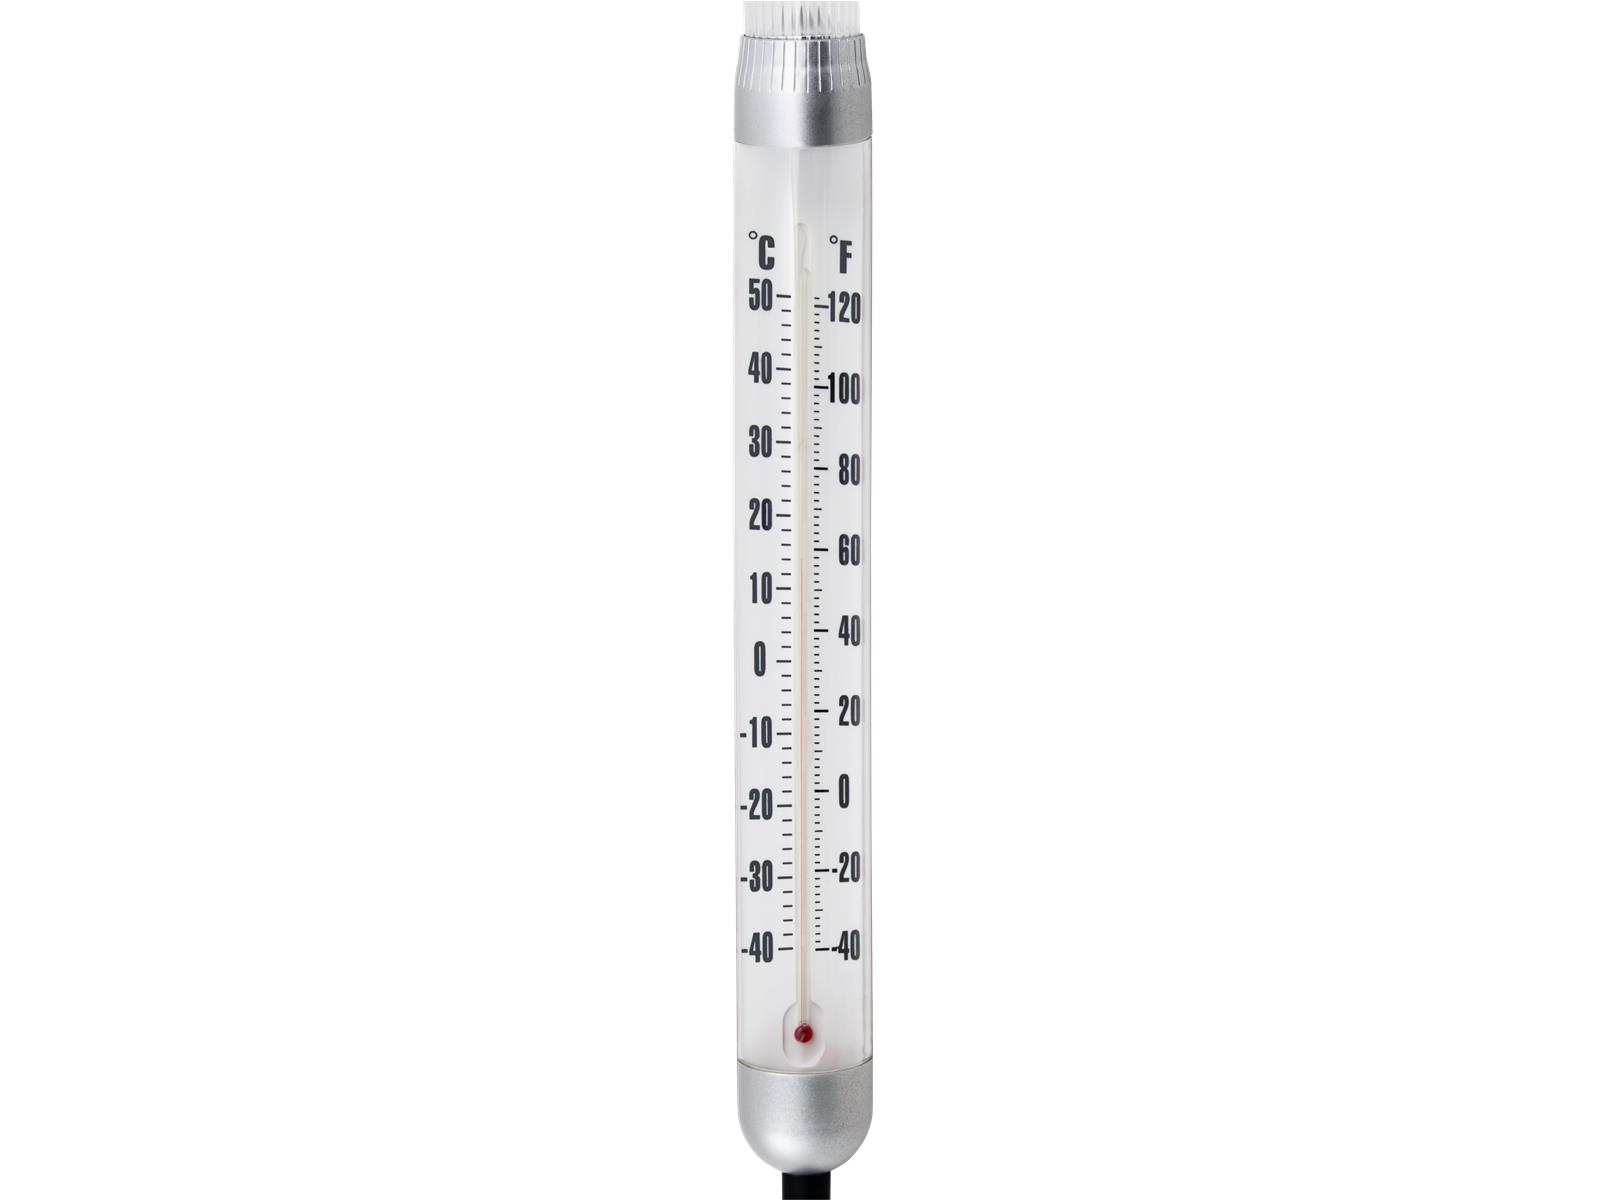 LED Solar-Gartenleuchte GRUNDIG ''Thermometer'',ØxH 12,5x97cm